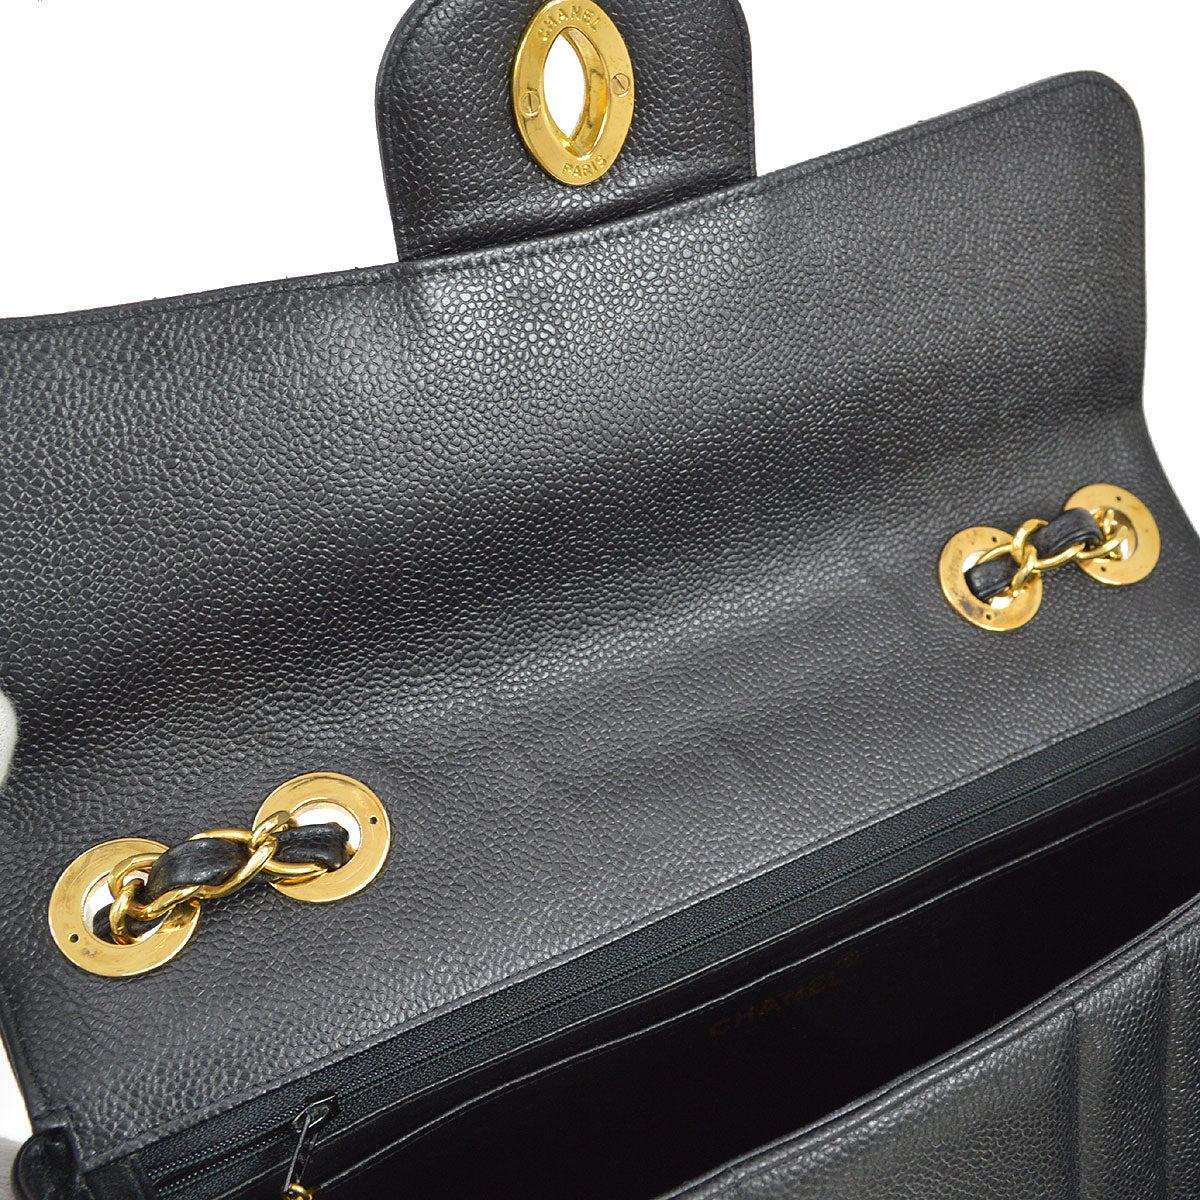 CHANEL Black Caviar Leather Gold Hardware Large Jumbo Shoulder Flap Bag For Sale 2